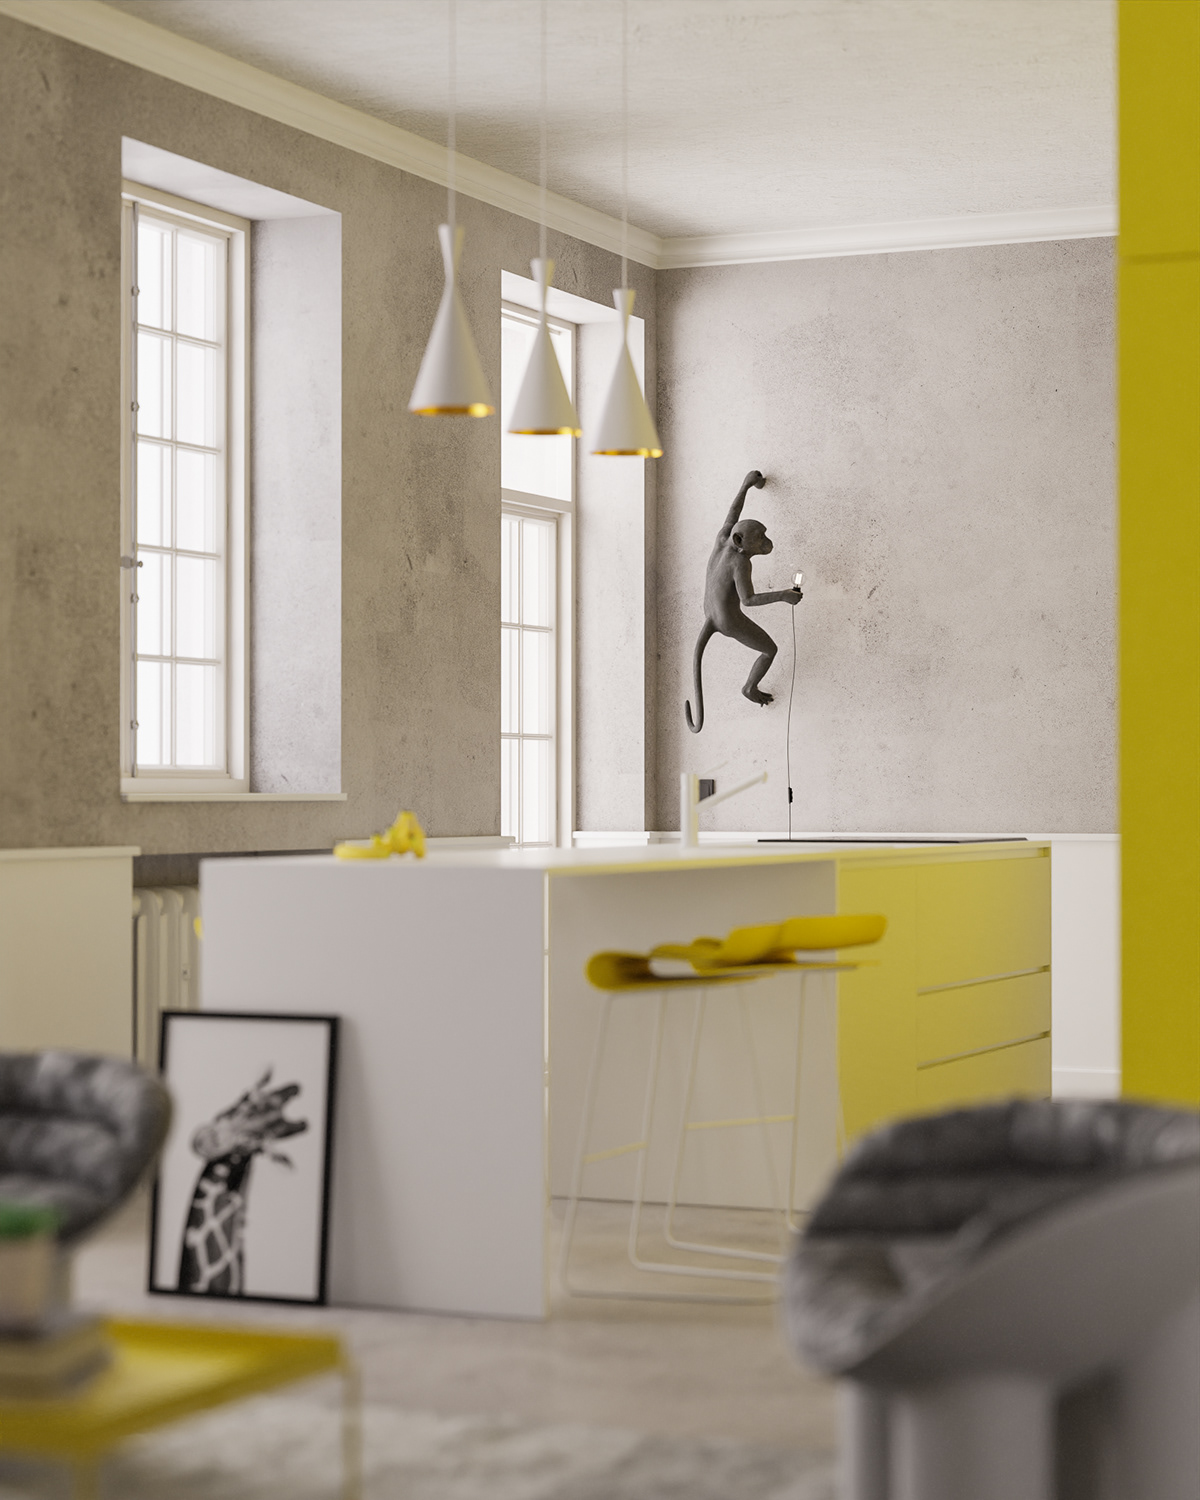 architecture archviz blender CGI cycles design Interior kitchen yellow